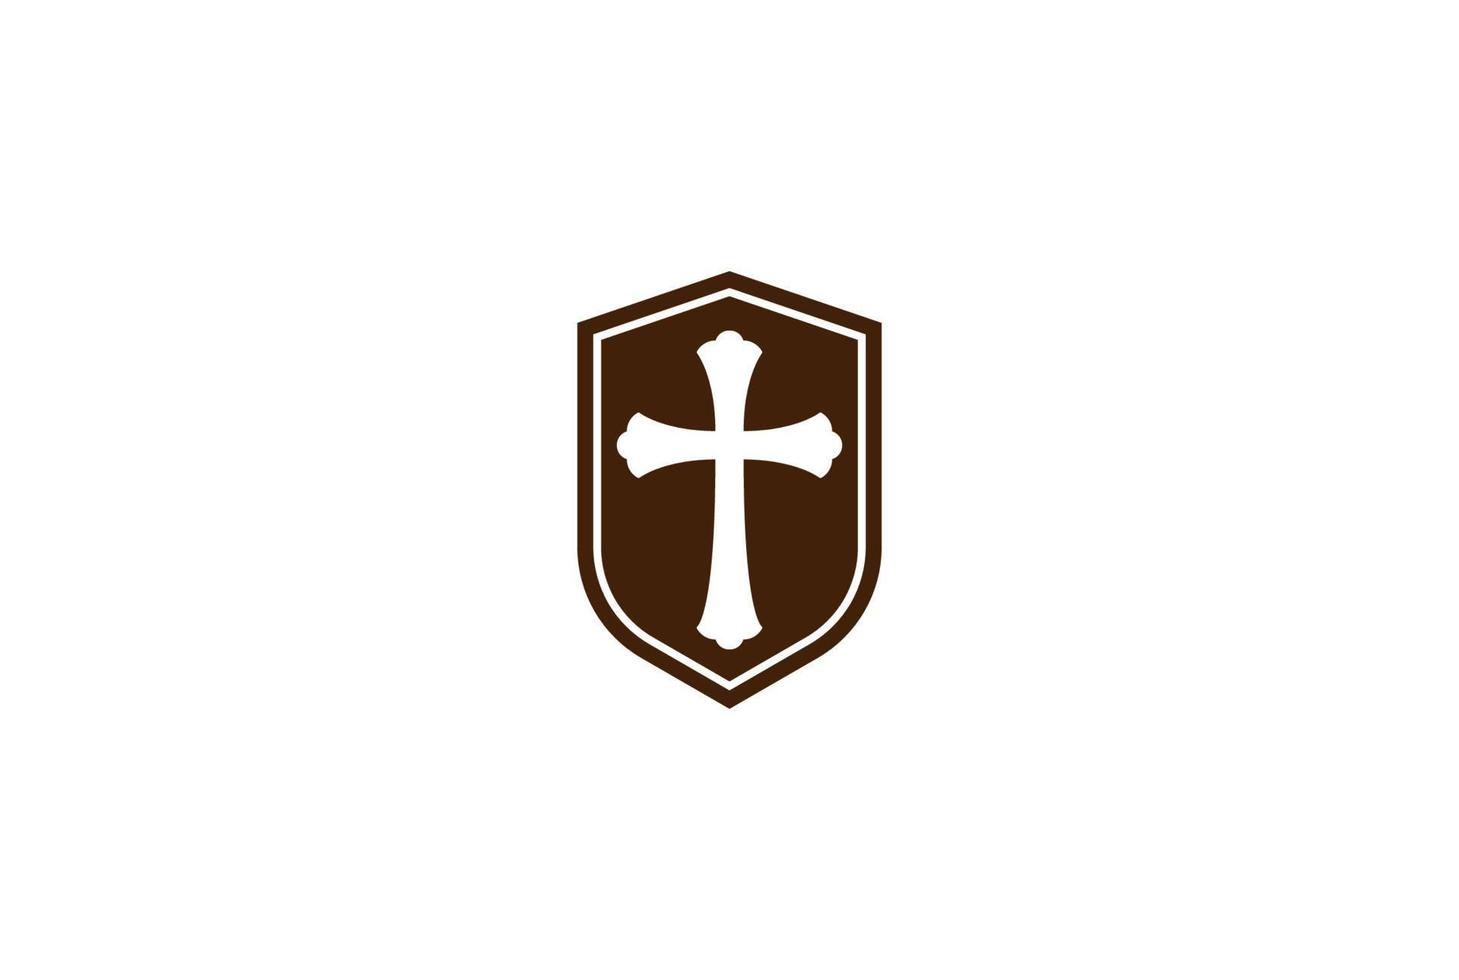 bouclier vintage rétro avec vecteur de conception de logo croix chrétienne